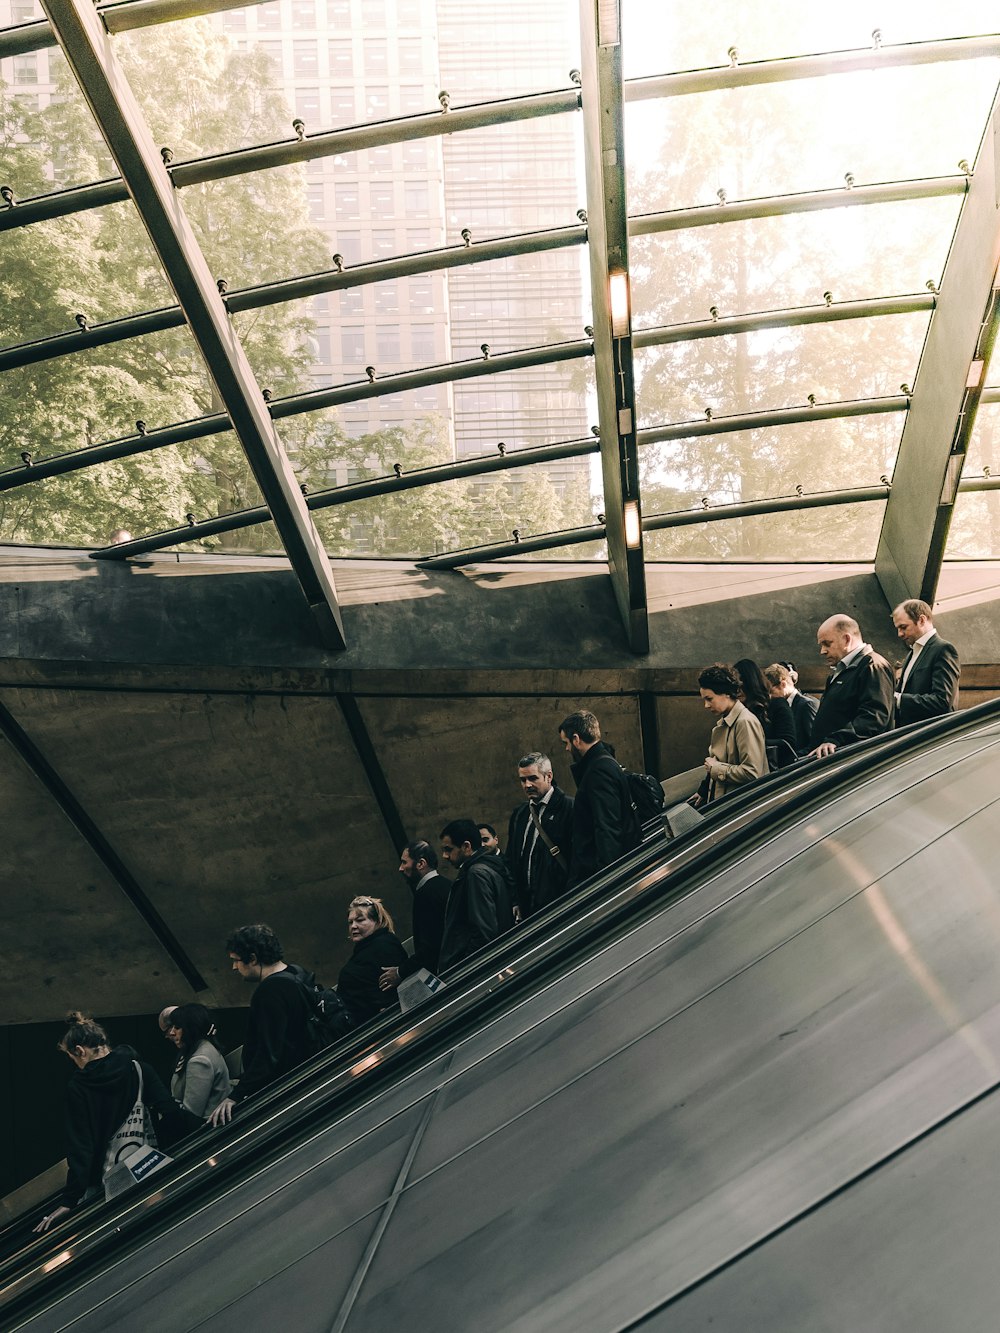 people using escalator during daytime